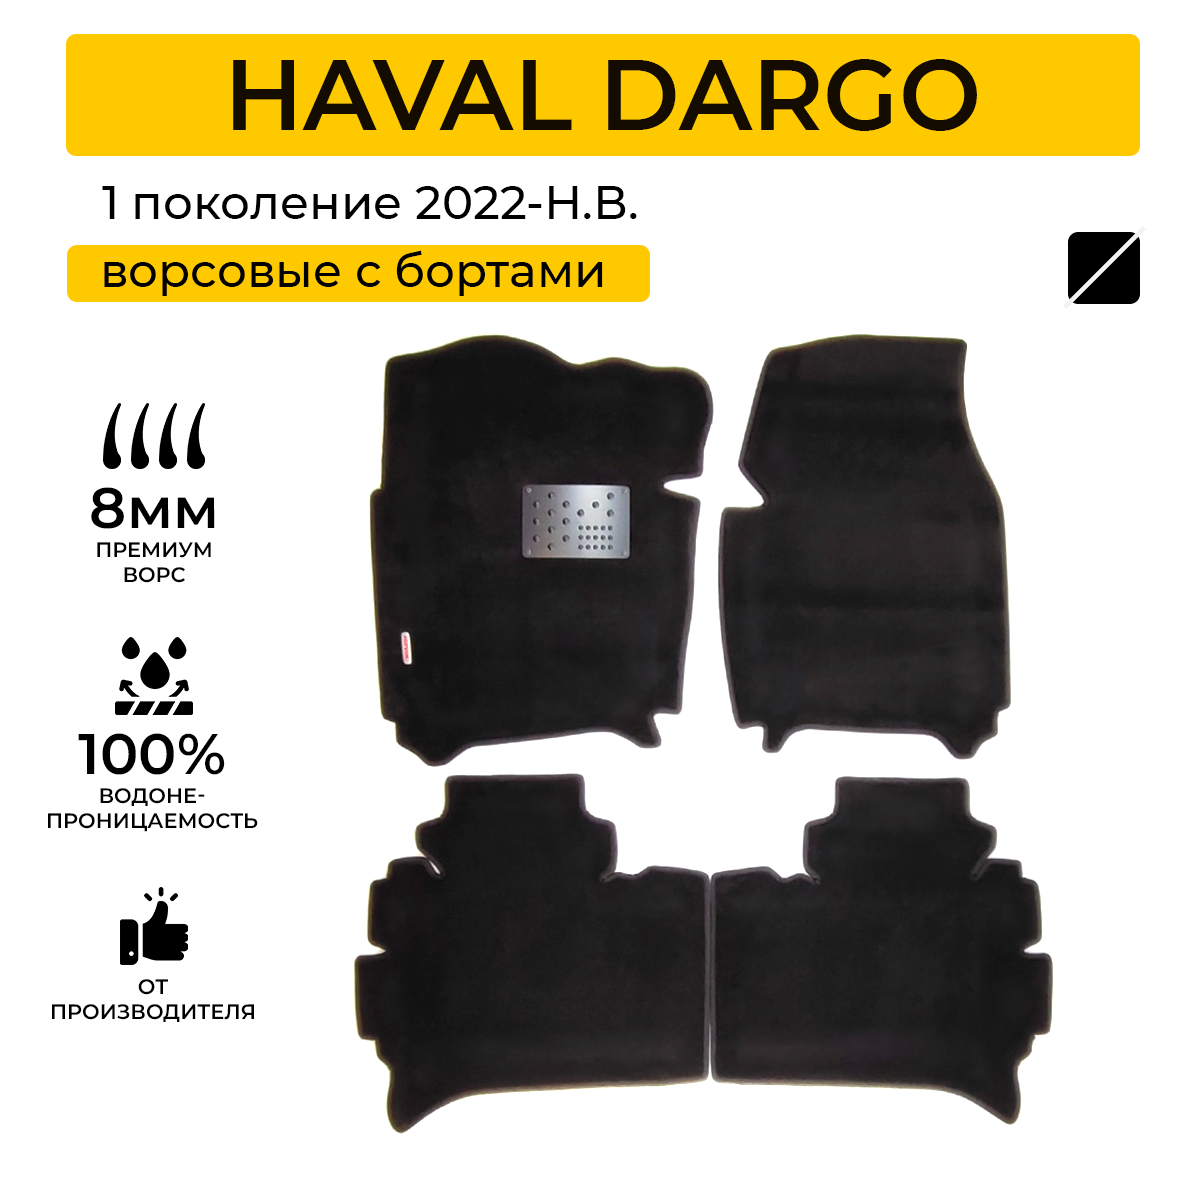 Ворсовые коврики для автомобиля HAVAL DARGO (Хавал Дарго) 2022-Н. В. с бортами ворсовые коврики в салон